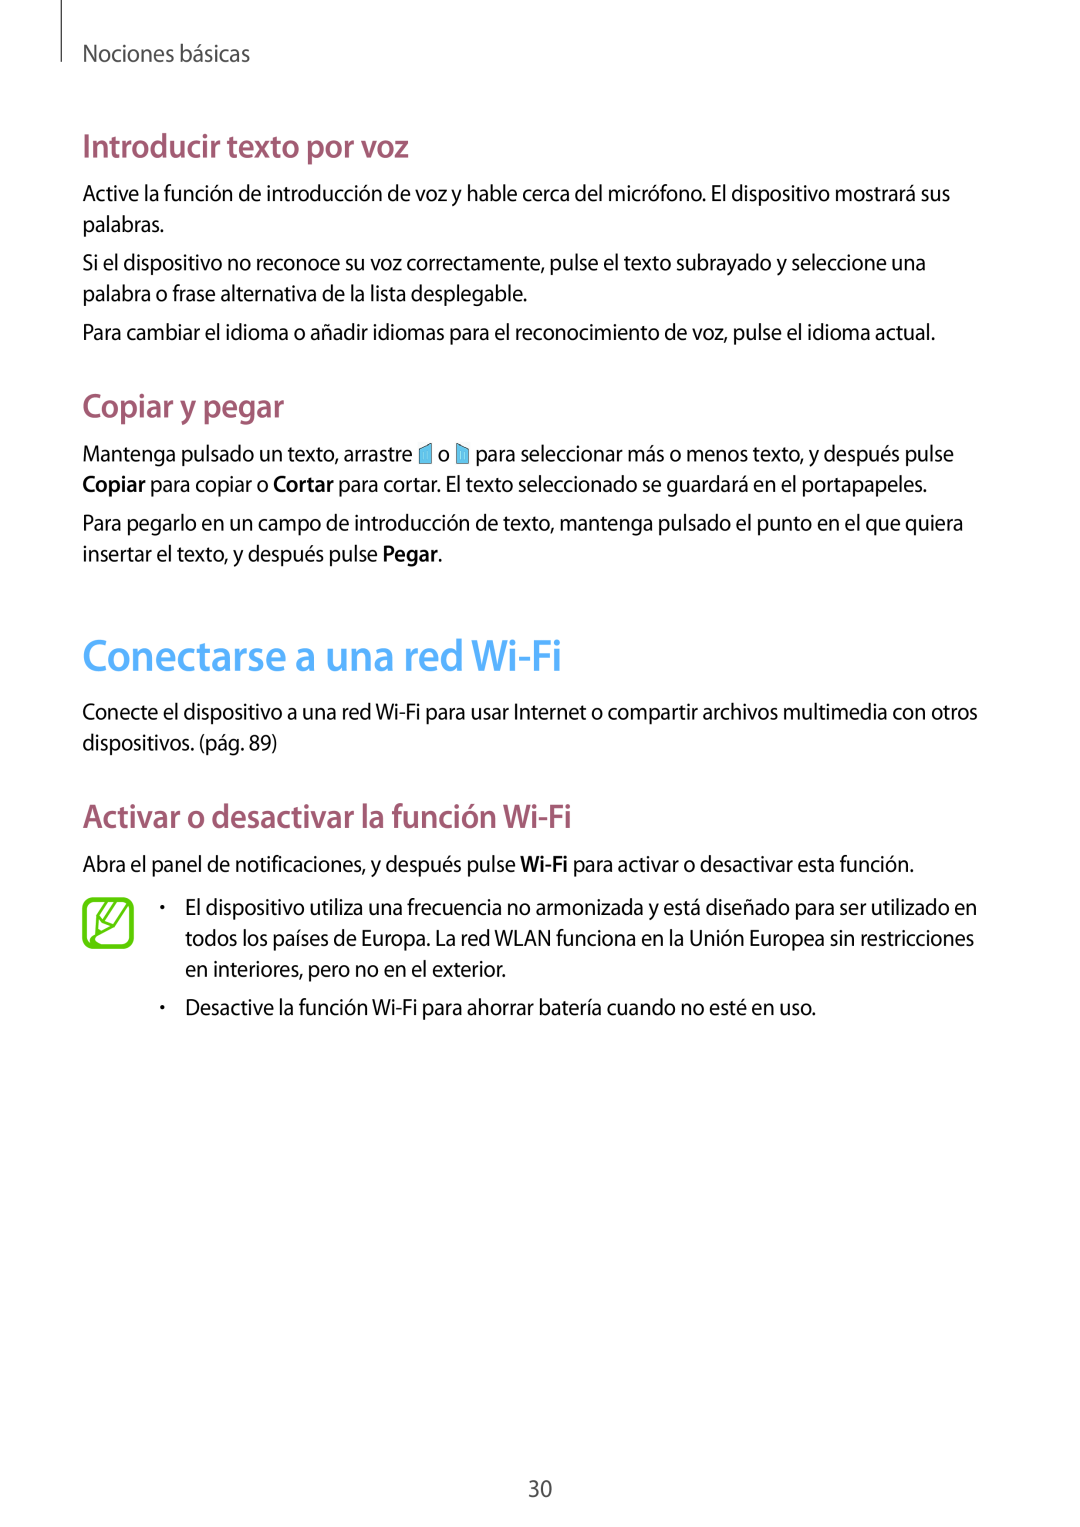 Samsung GT-P5200ZWAPHE manual Conectarse a una red Wi-Fi, Introducir texto por voz, Copiar y pegar, Nociones básicas 